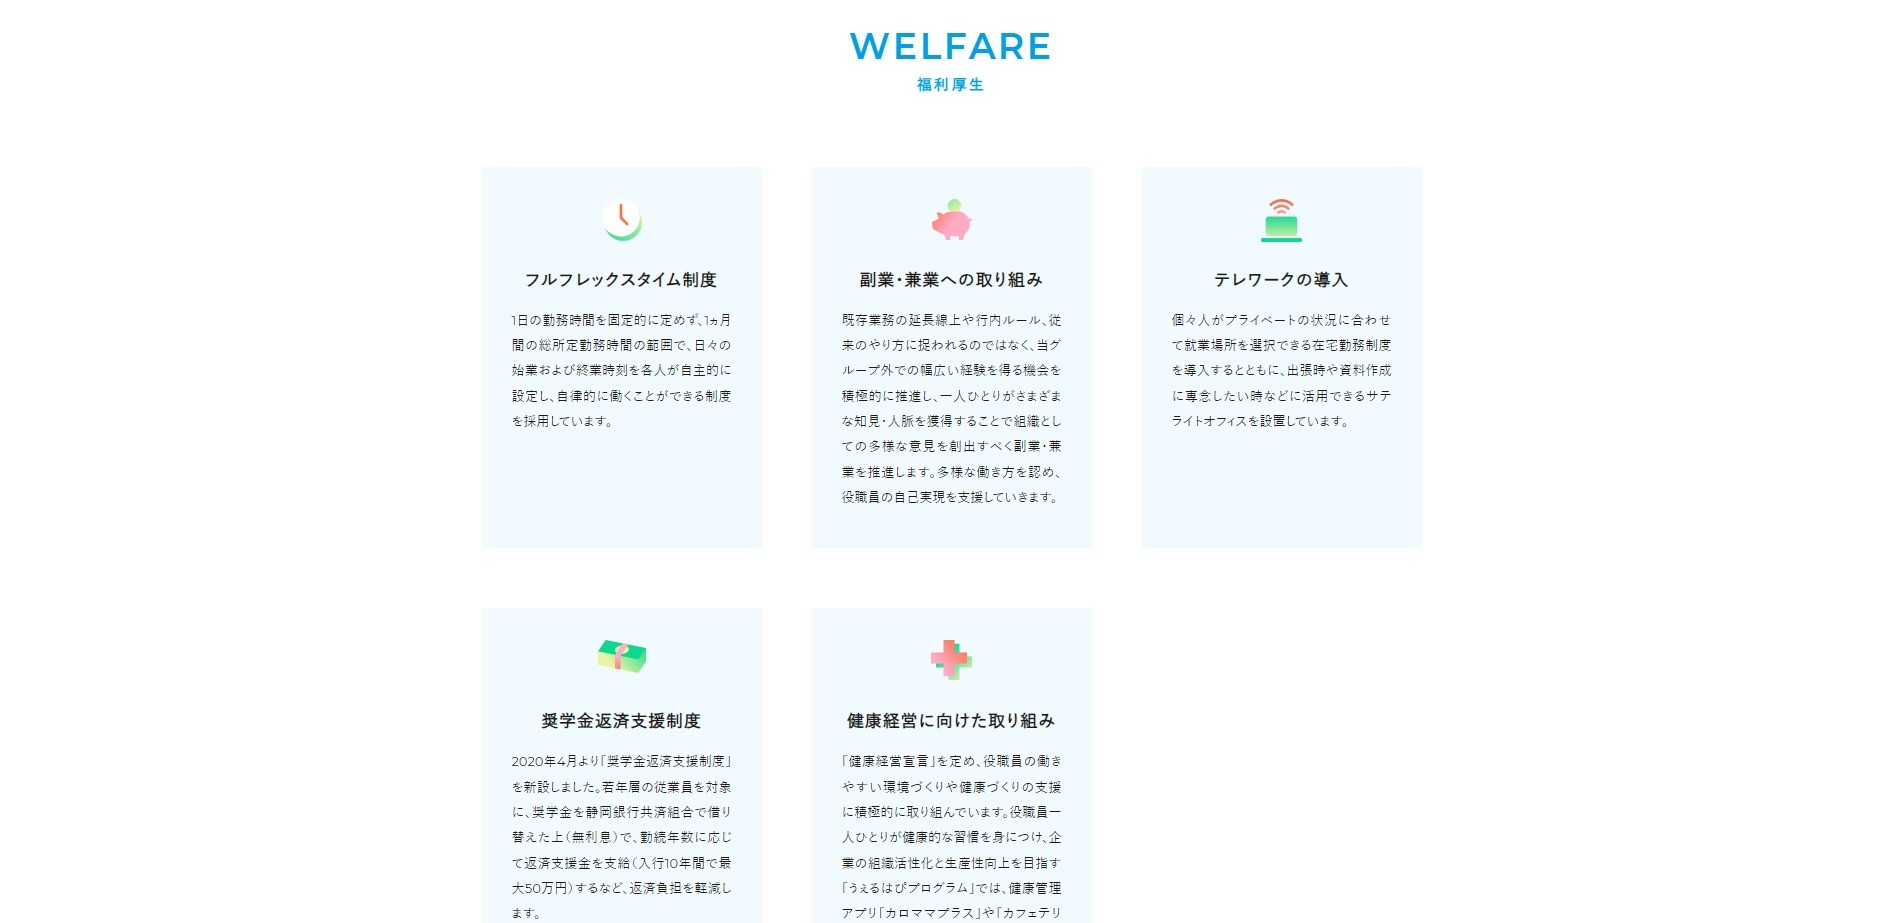 企業の採用サイトにおける福利厚生の掲載例　株式会社静岡銀行